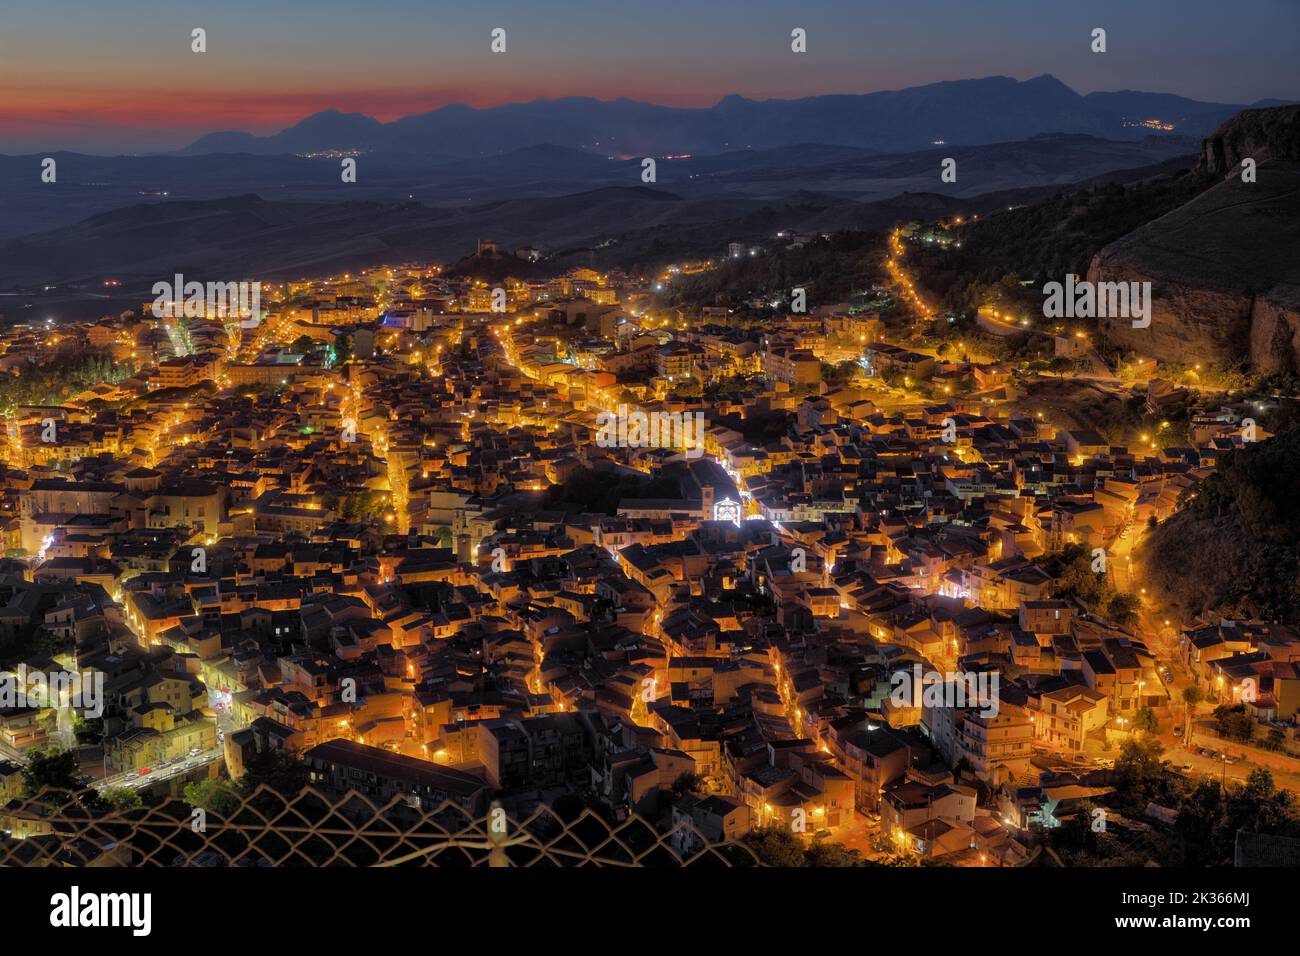 Vue aérienne nocturne des rues éclairées de Corleone au crépuscule, Sicile occidentale, Italie Banque D'Images